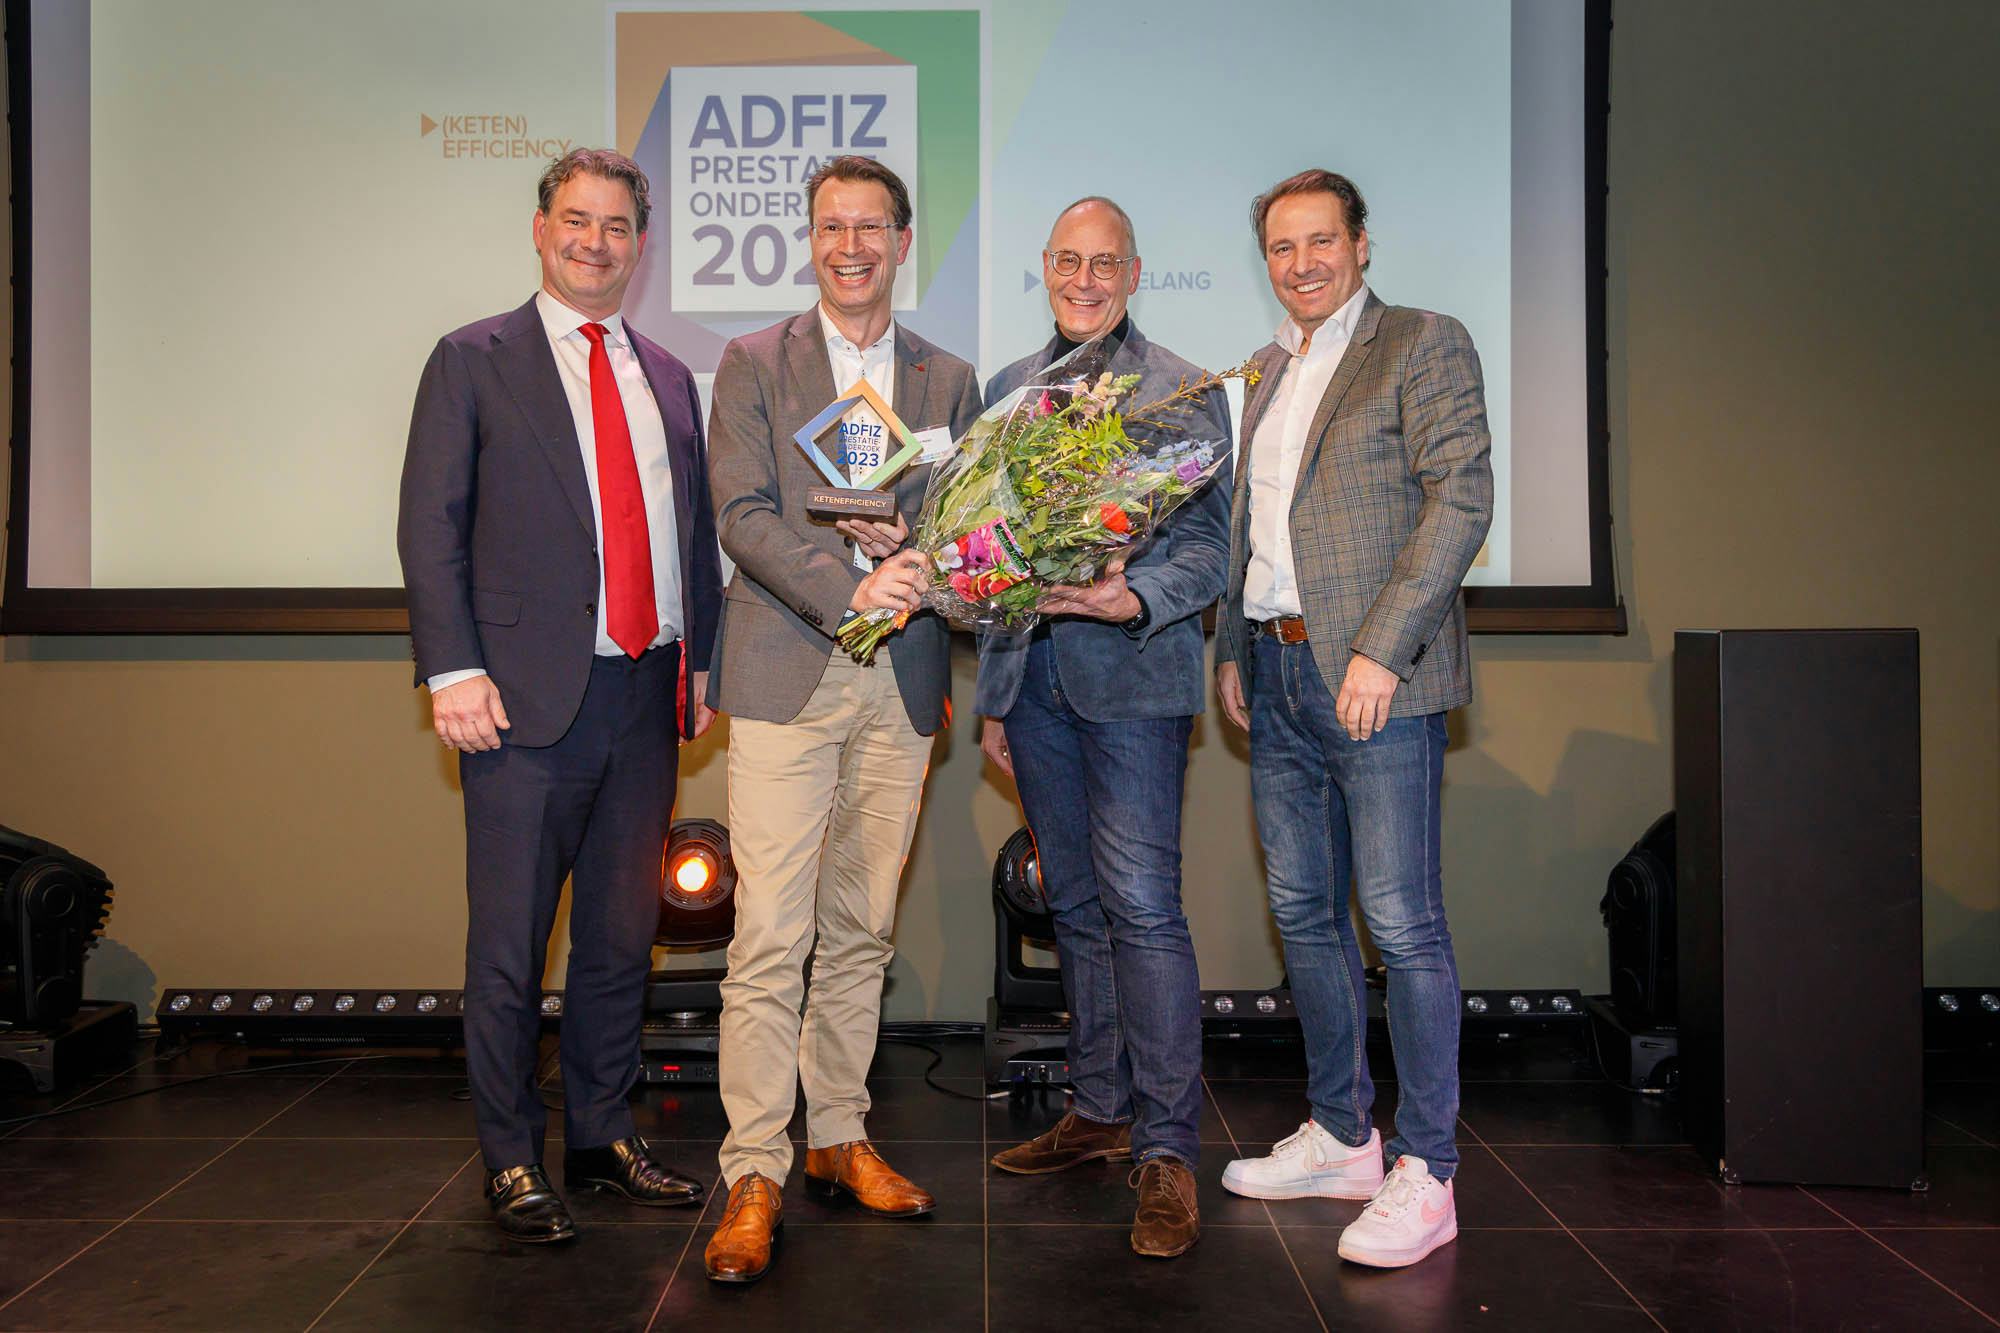 Adfiz-winnaar TAF: een snel en direct lijntje met De Hoop (video)